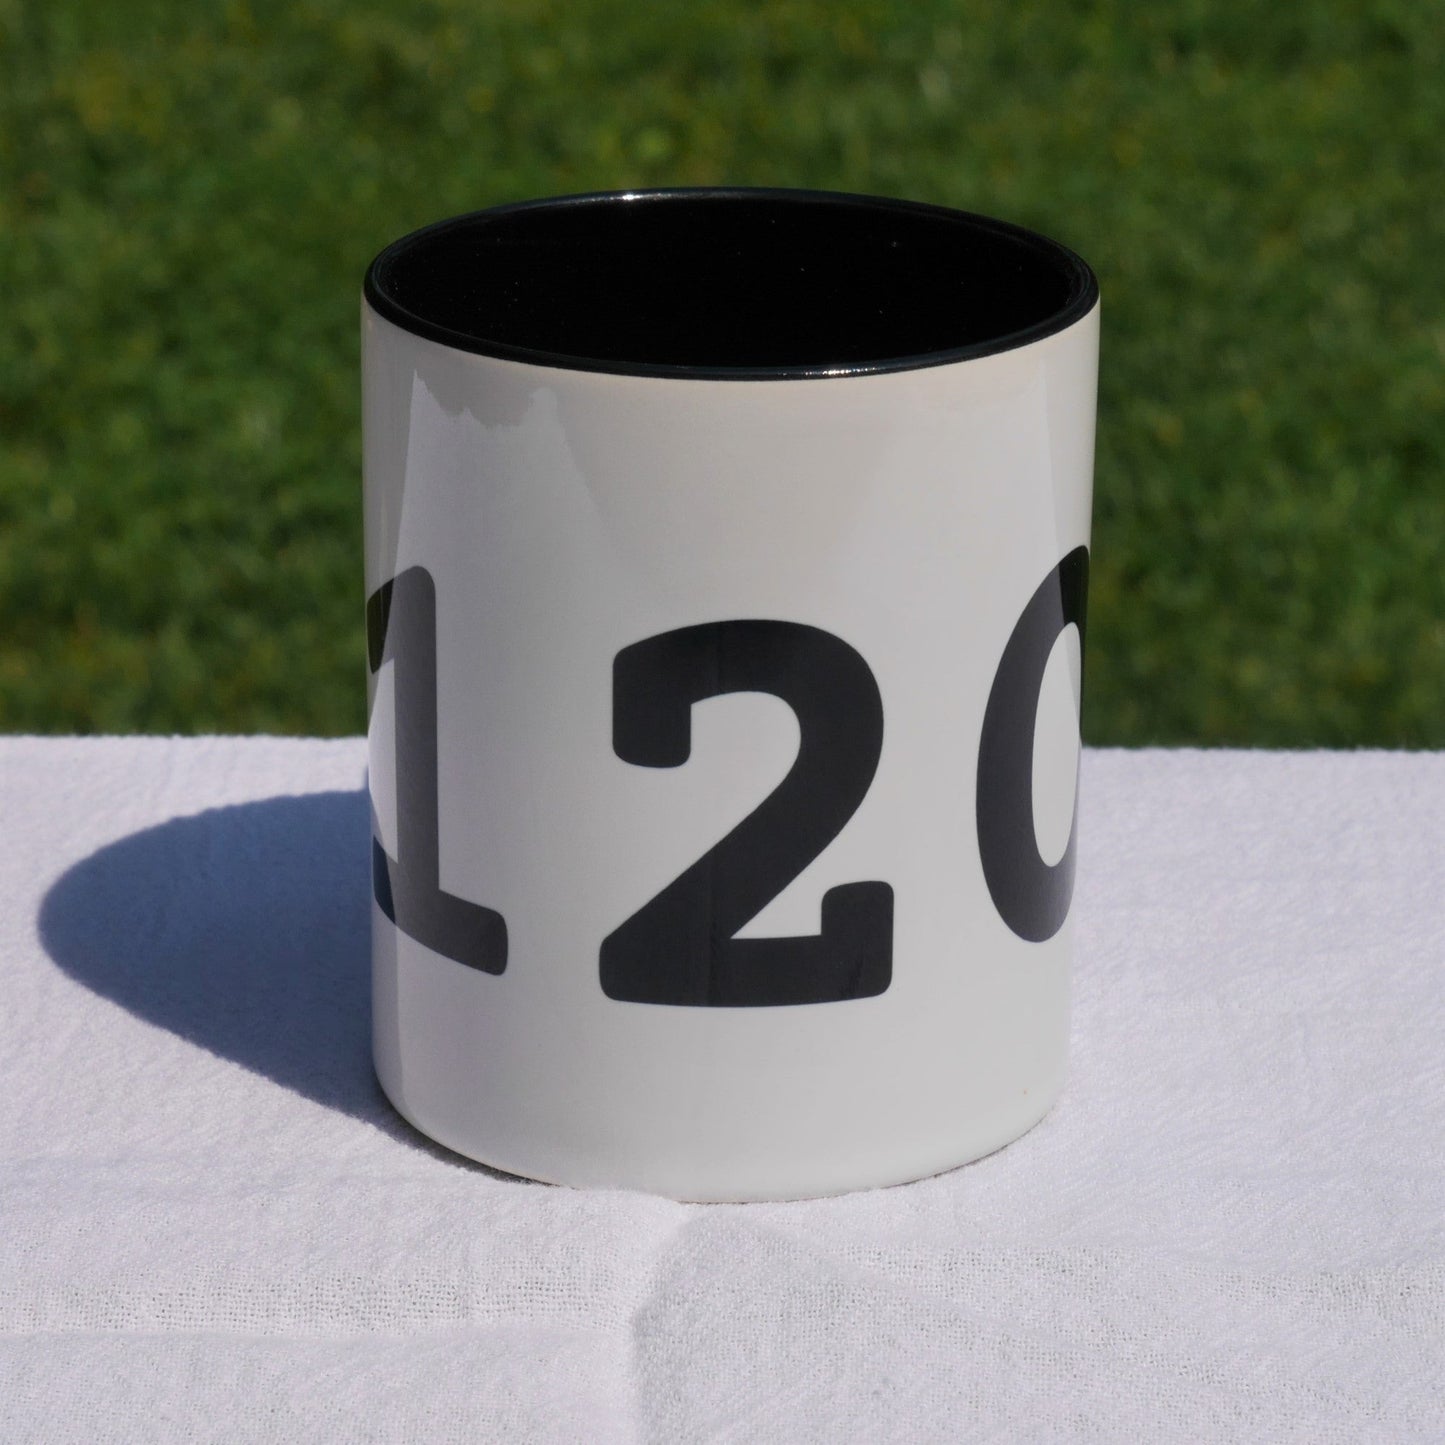 Aviation-Theme Coffee Mug - Black • YZR Sarnia • YHM Designs - Image 05